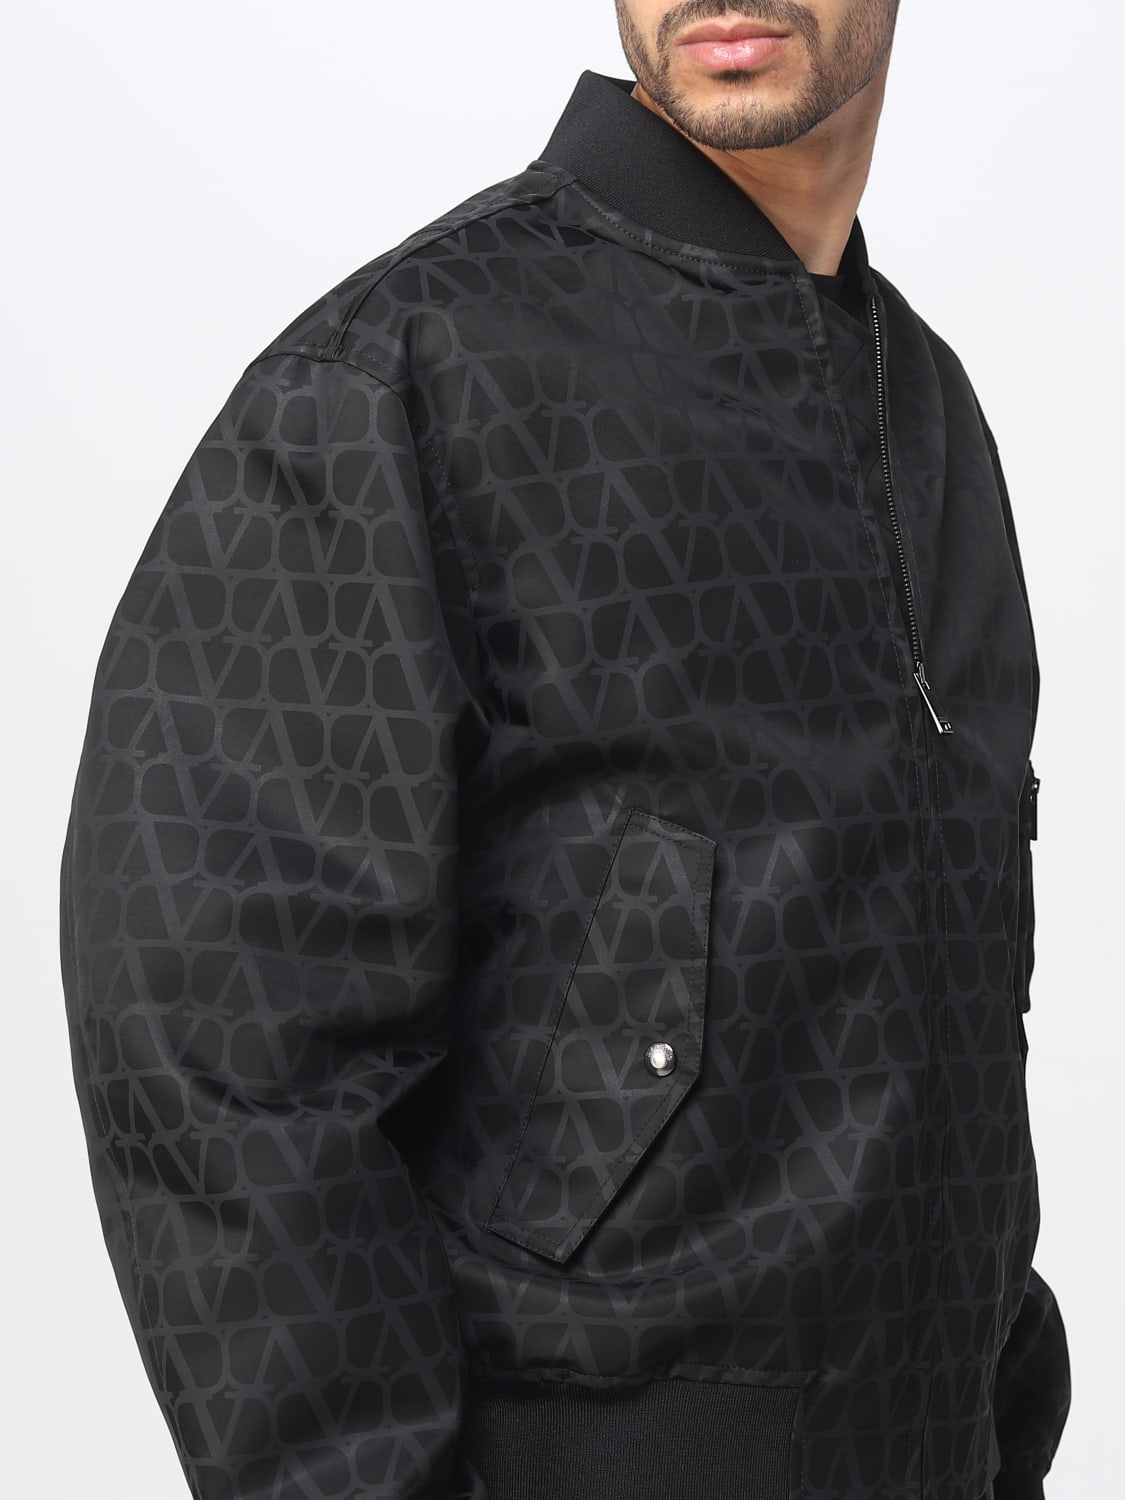 Chaquetas Louis Vuitton de color negro para Hombre - Vestiaire Collective